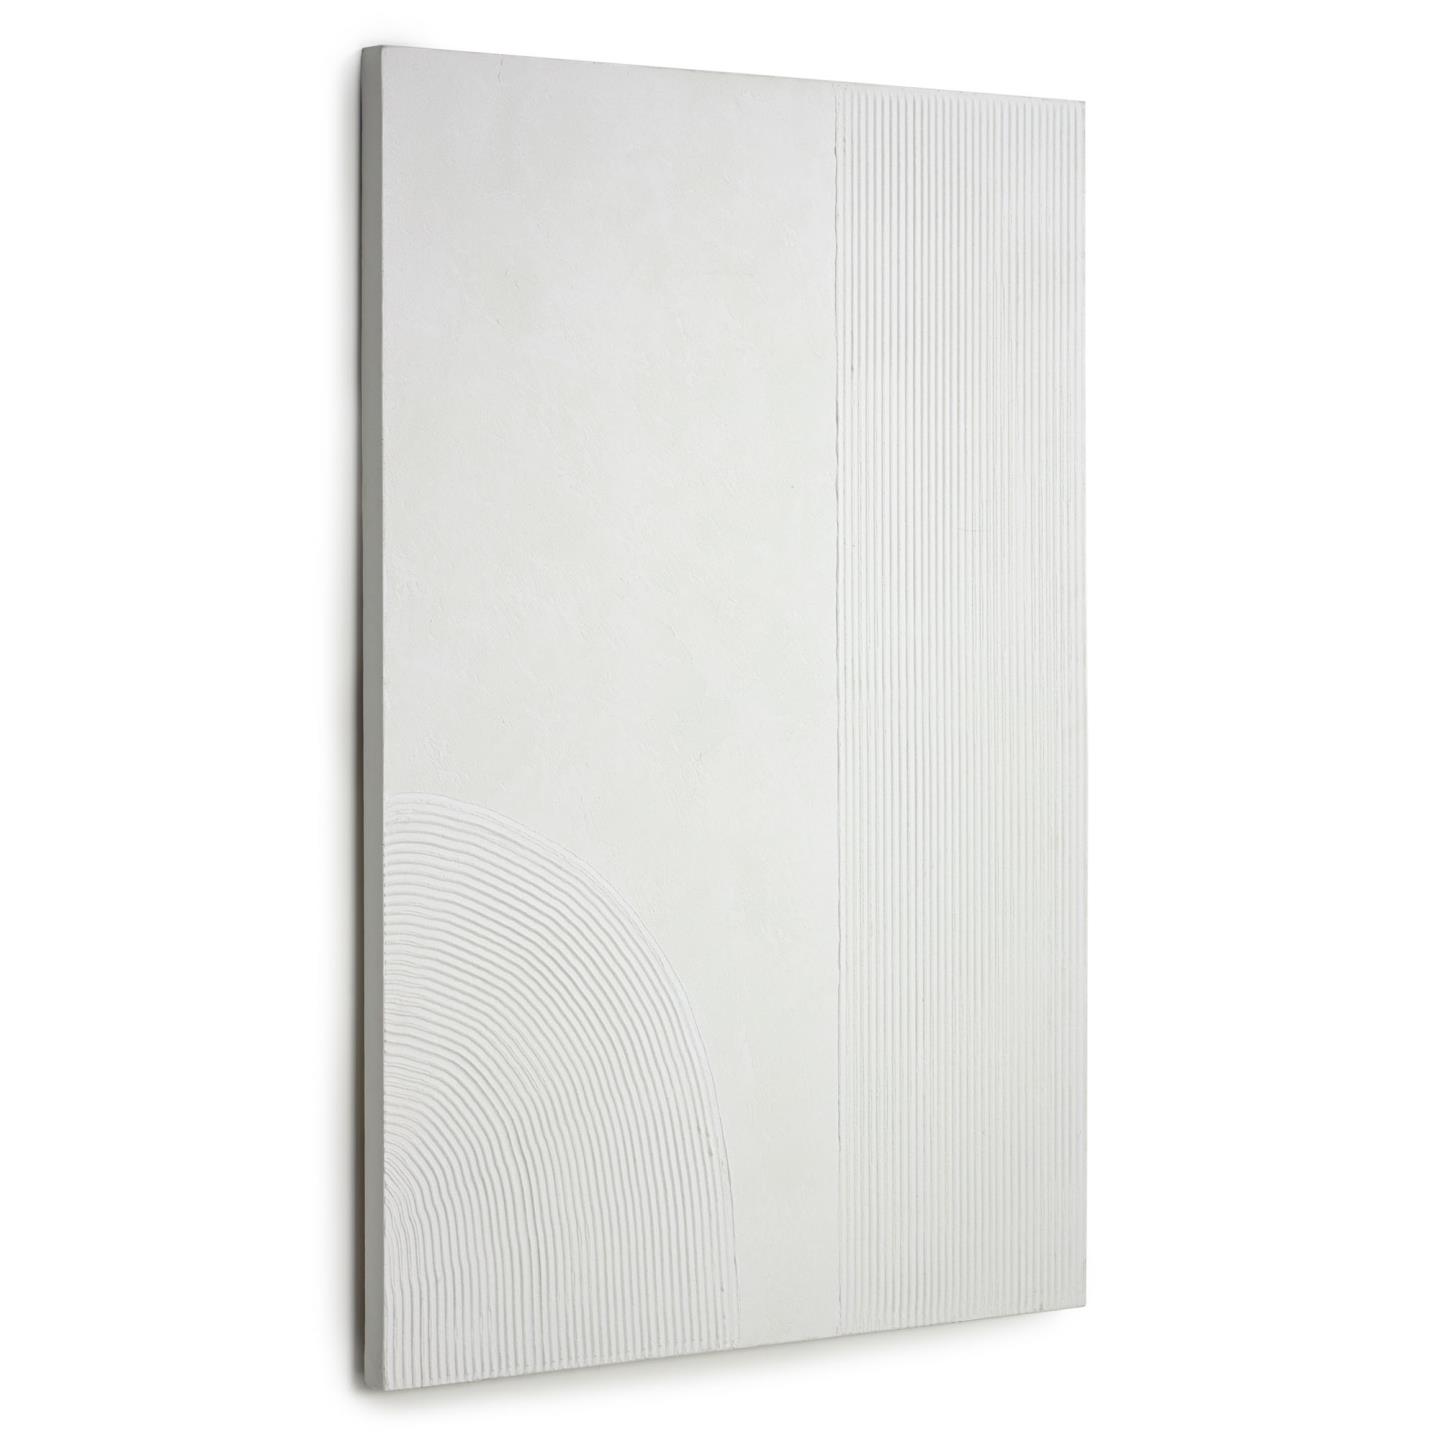 LAFORMA Adelta billede med hvide streger, rektangulær - hvid akrylmaling på lærred (80x110)